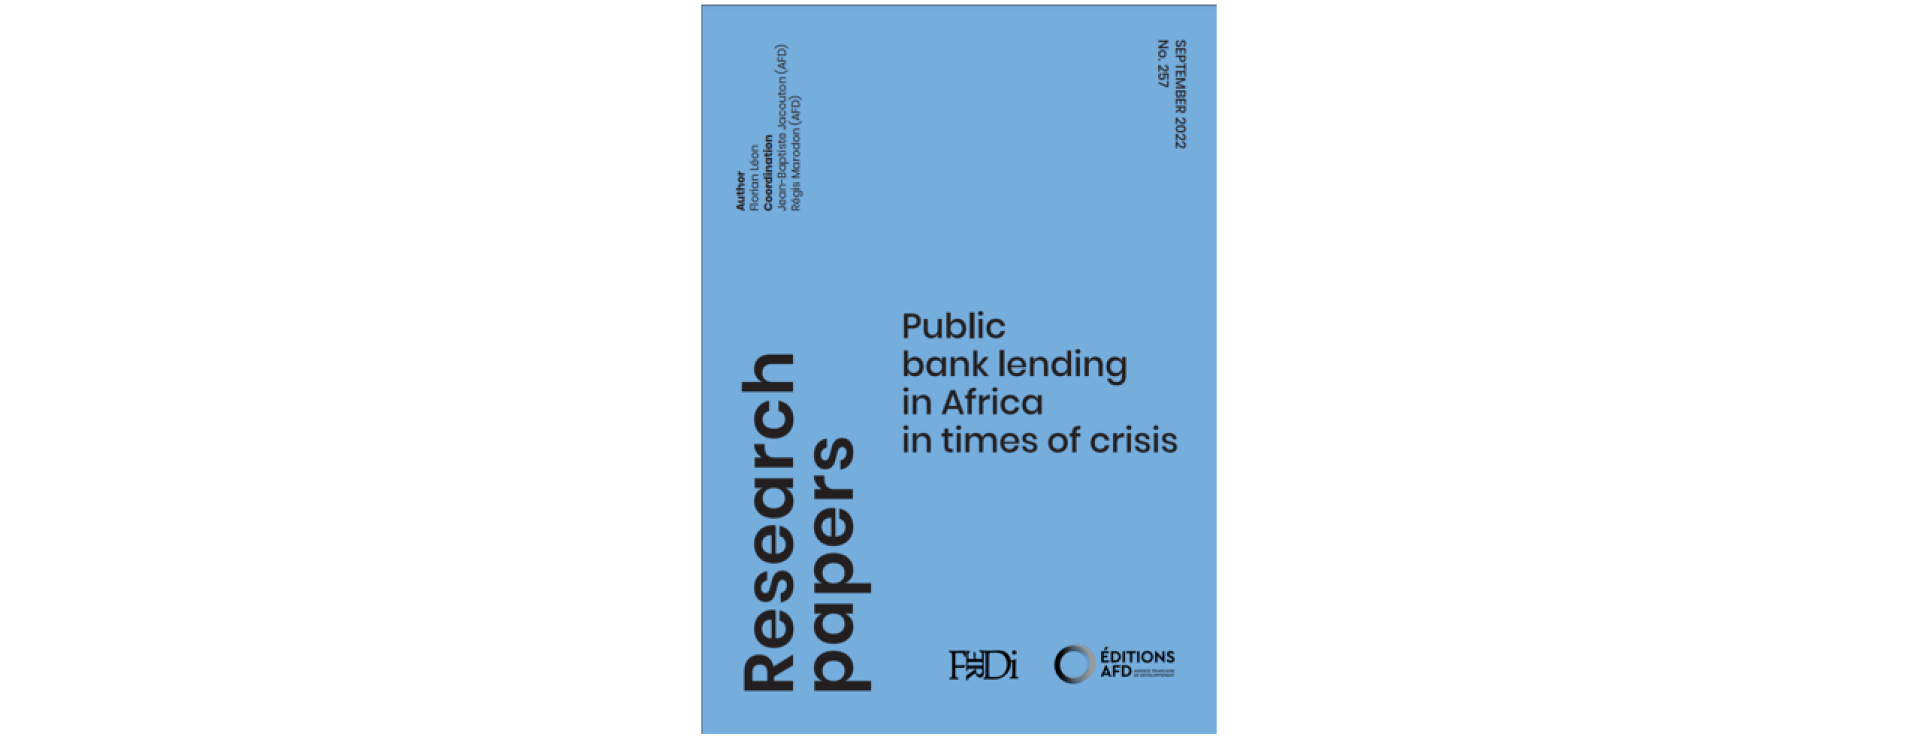 Public bank lending